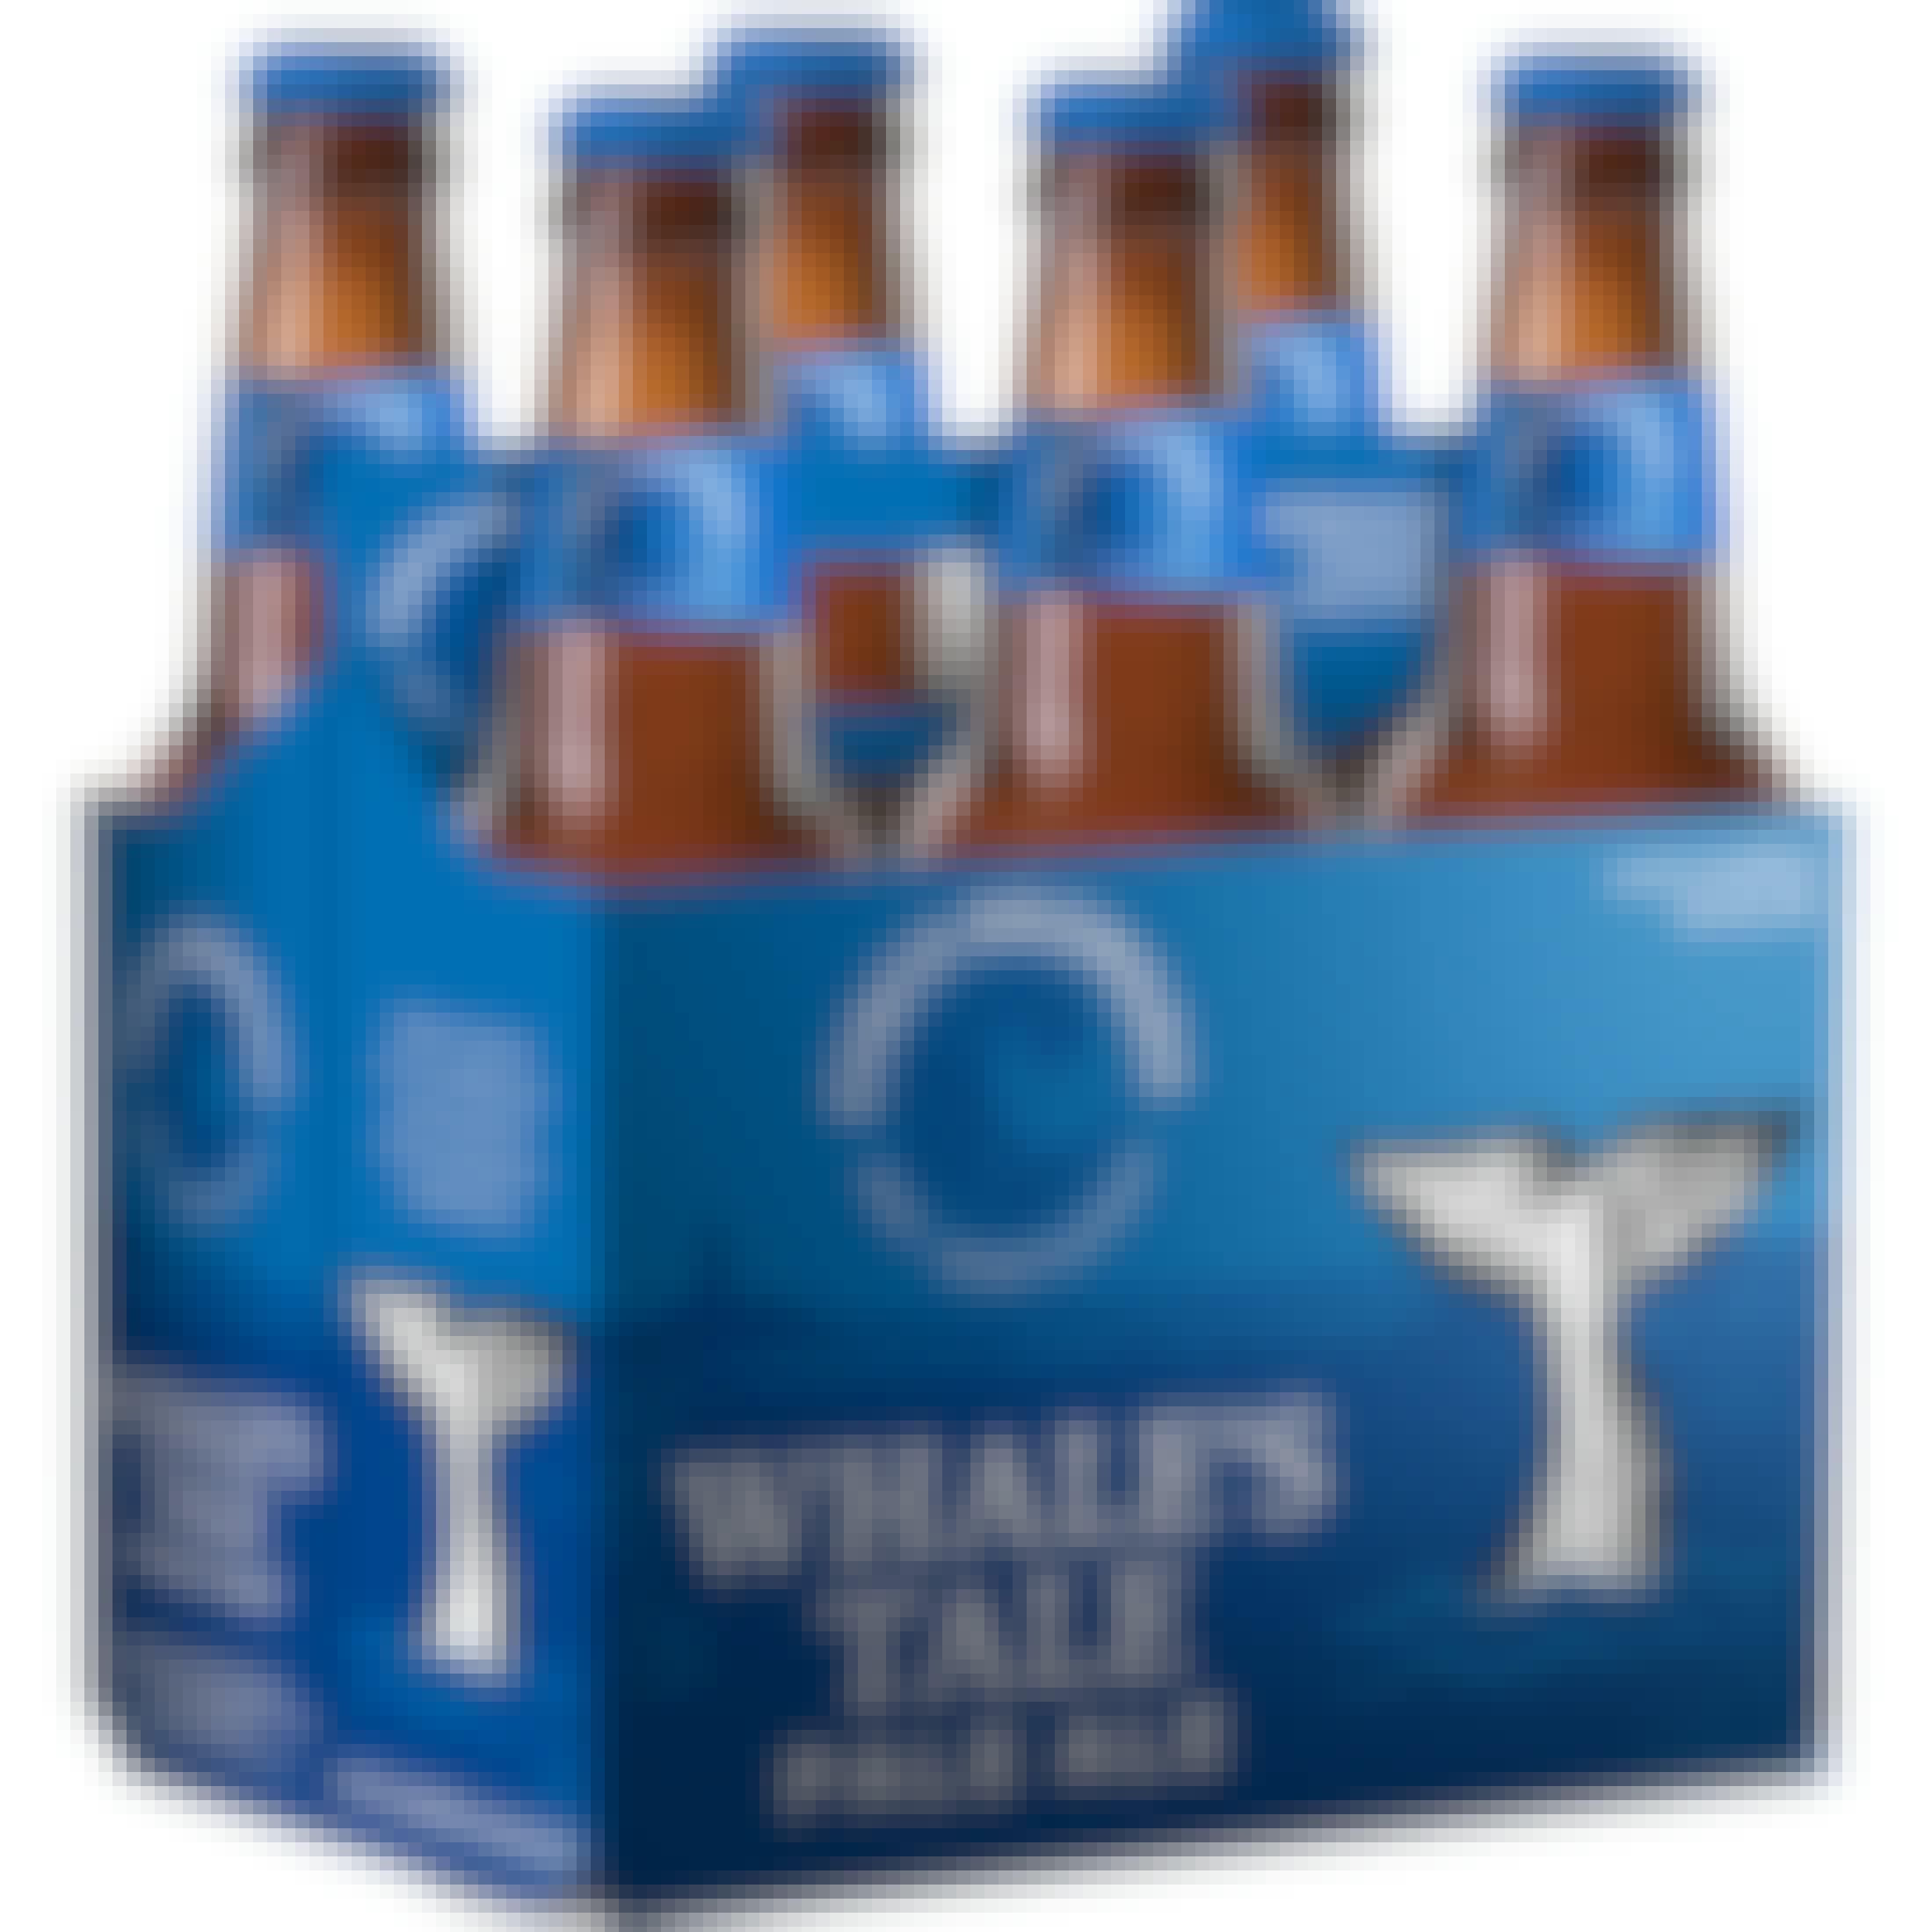 Cisco Brewers Whale's Tale Pale Ale 6 pack 12 oz. Bottle